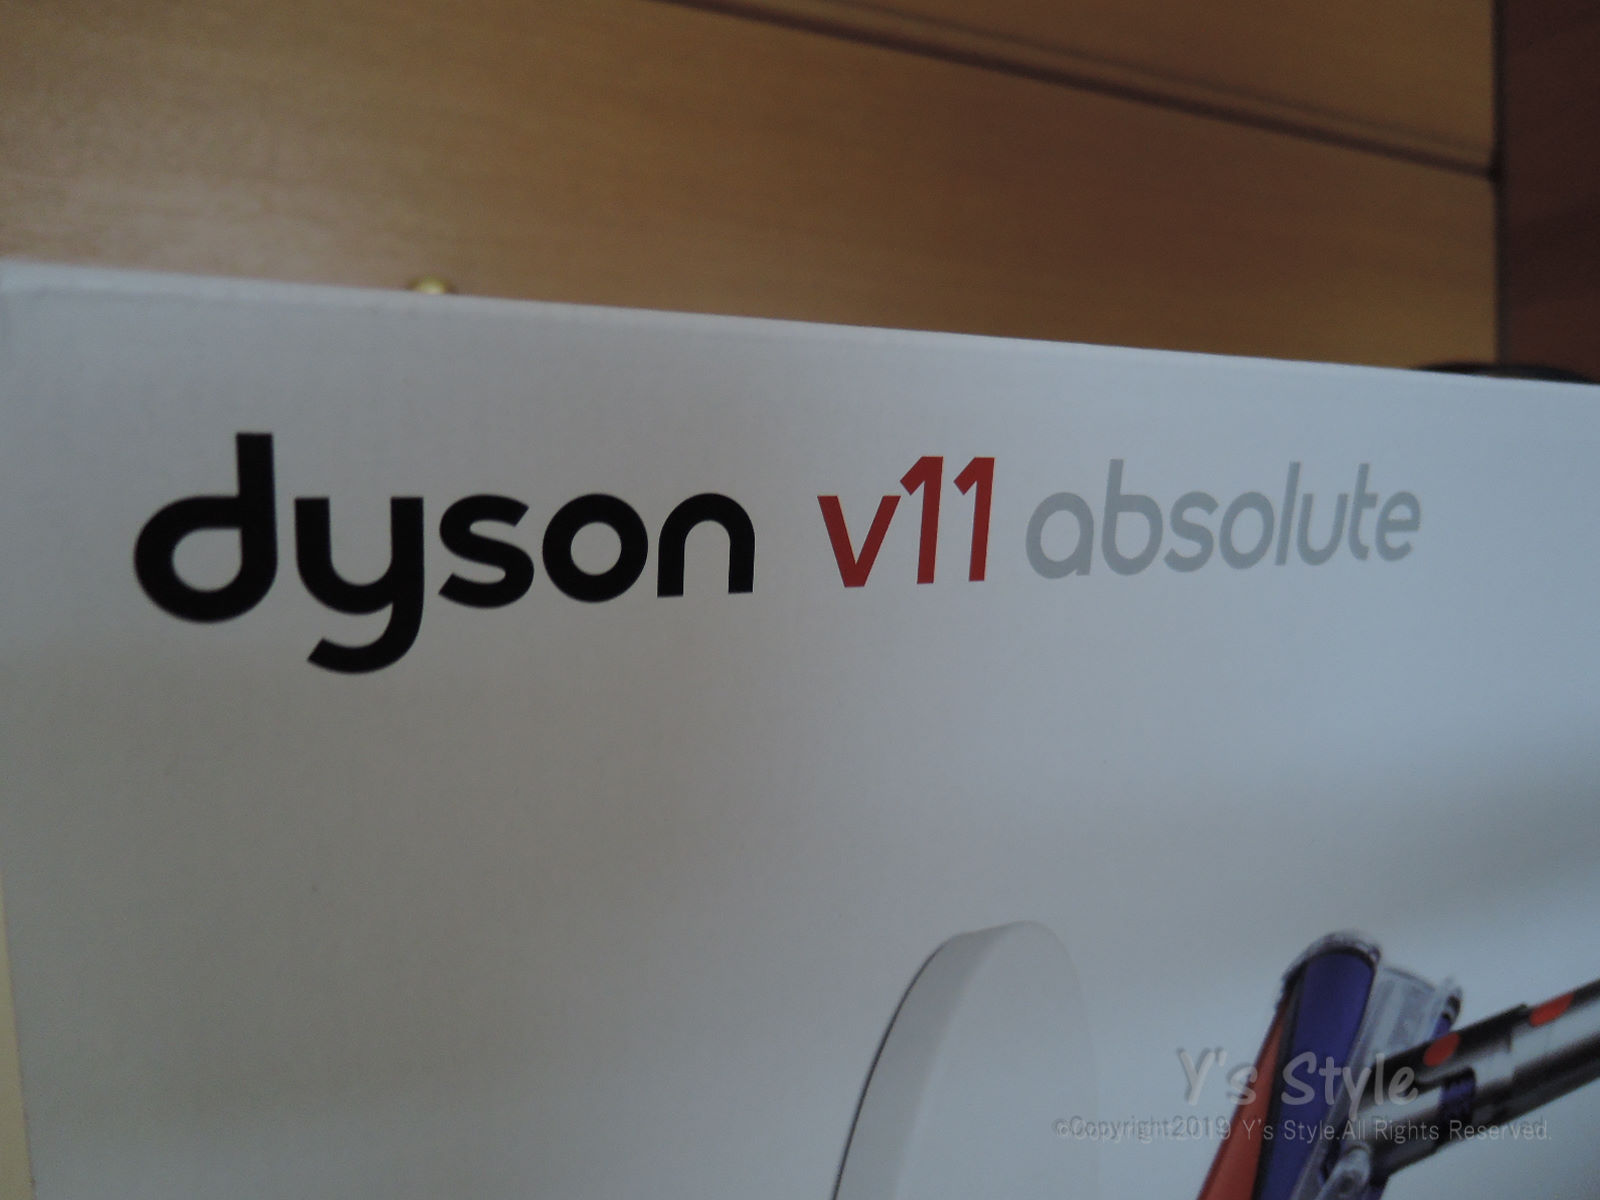 dyson v11を導入したら掃除が好きになったって話。